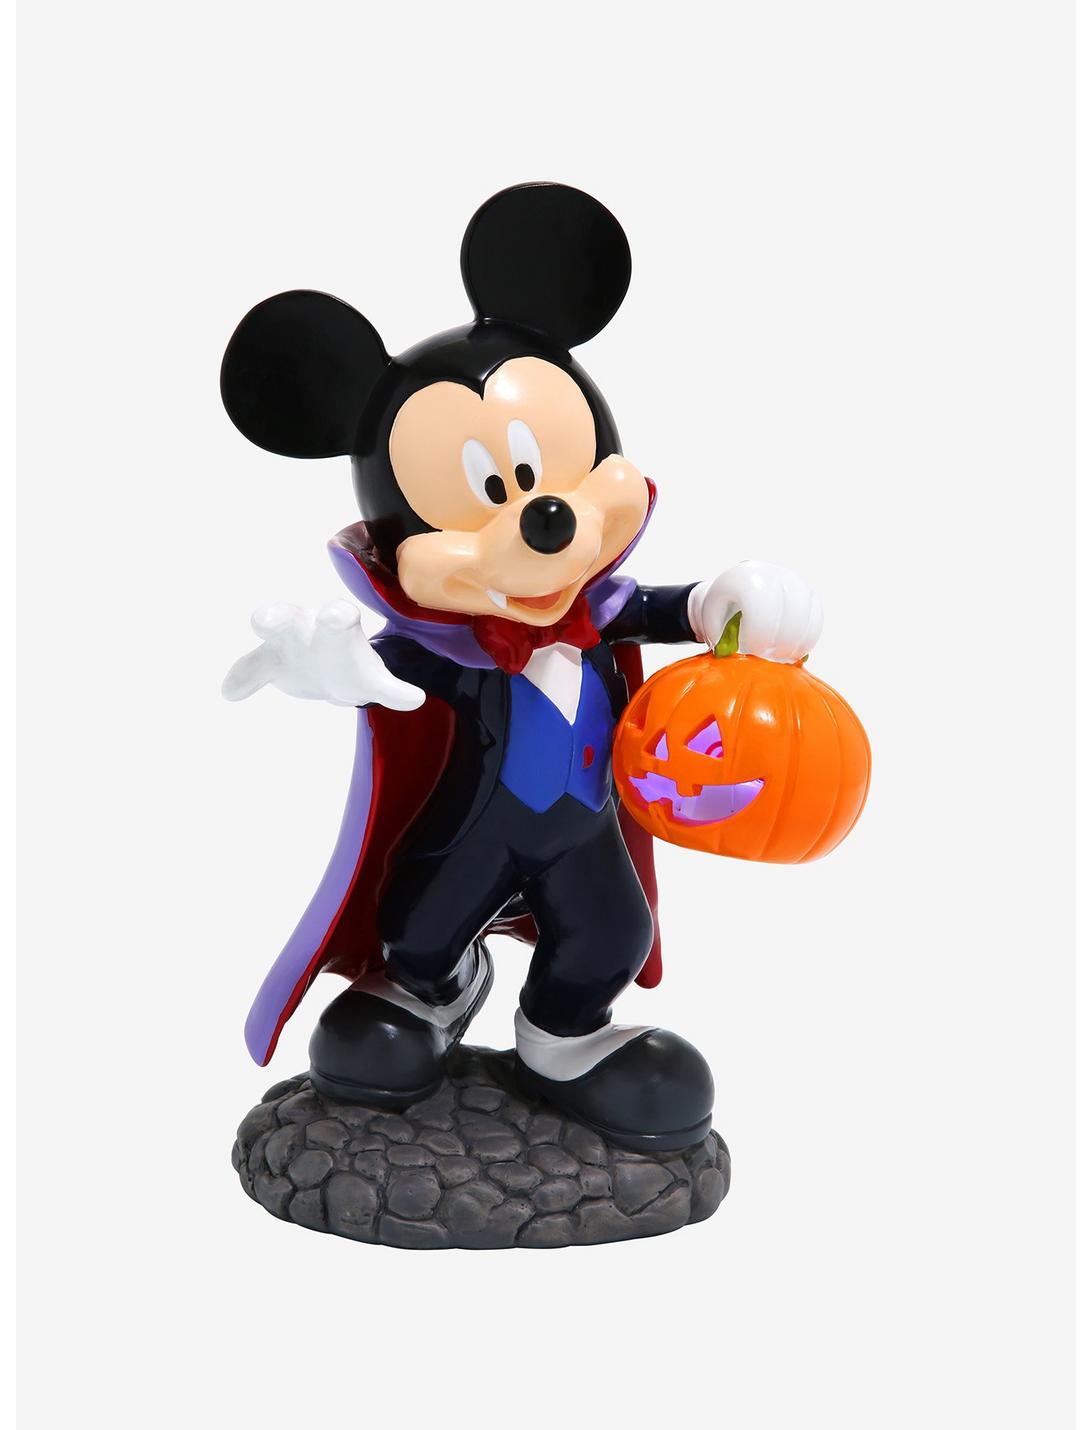 NEW Lot of 2 Disney Mickey & Friends MICKEY & MINNIE PVC Toy Figures 2 1/3"